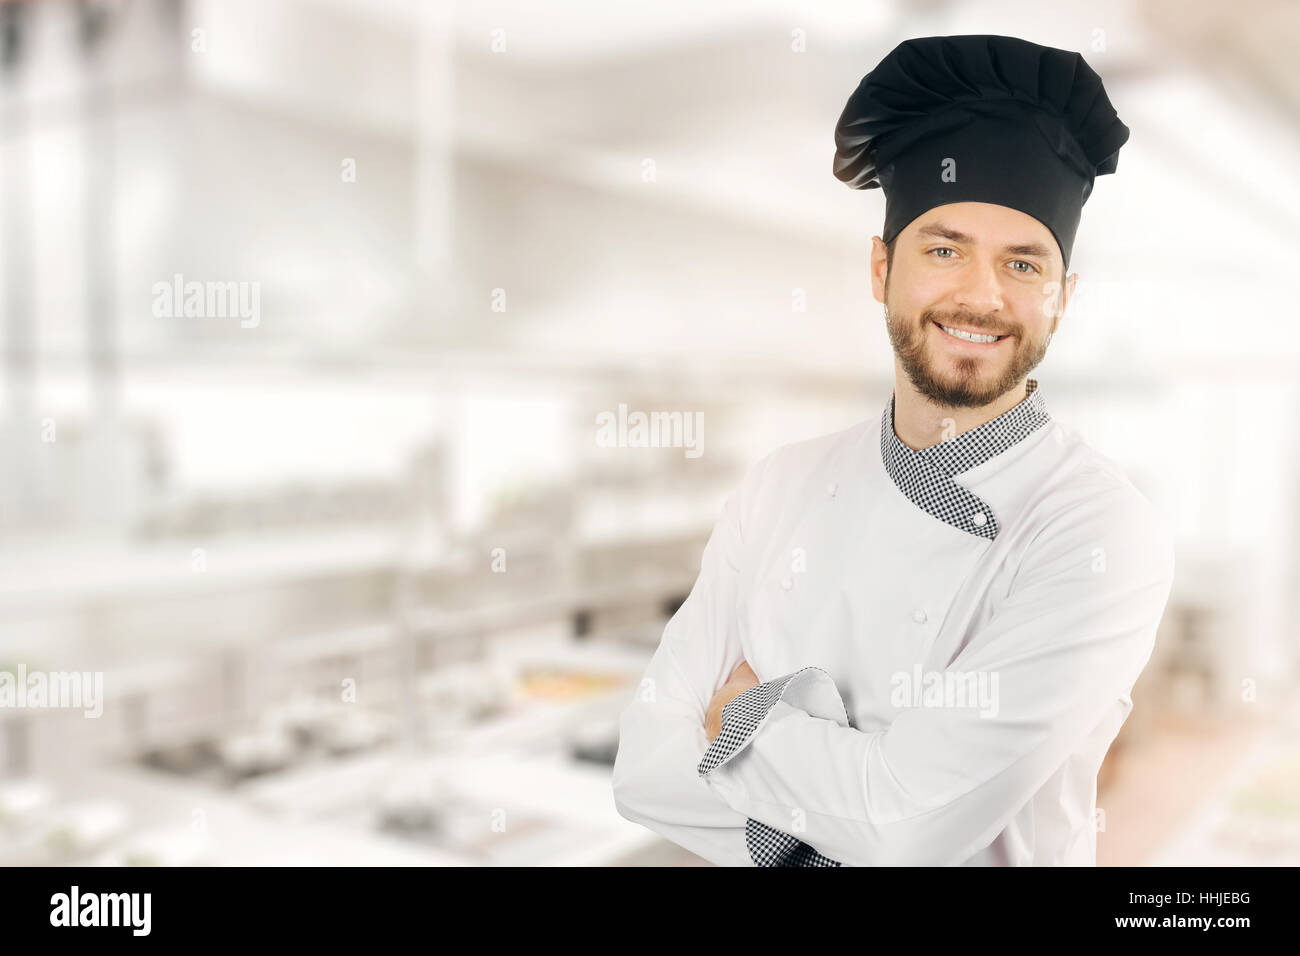 Happy smiling chef standing en cuisine. copy space Banque D'Images